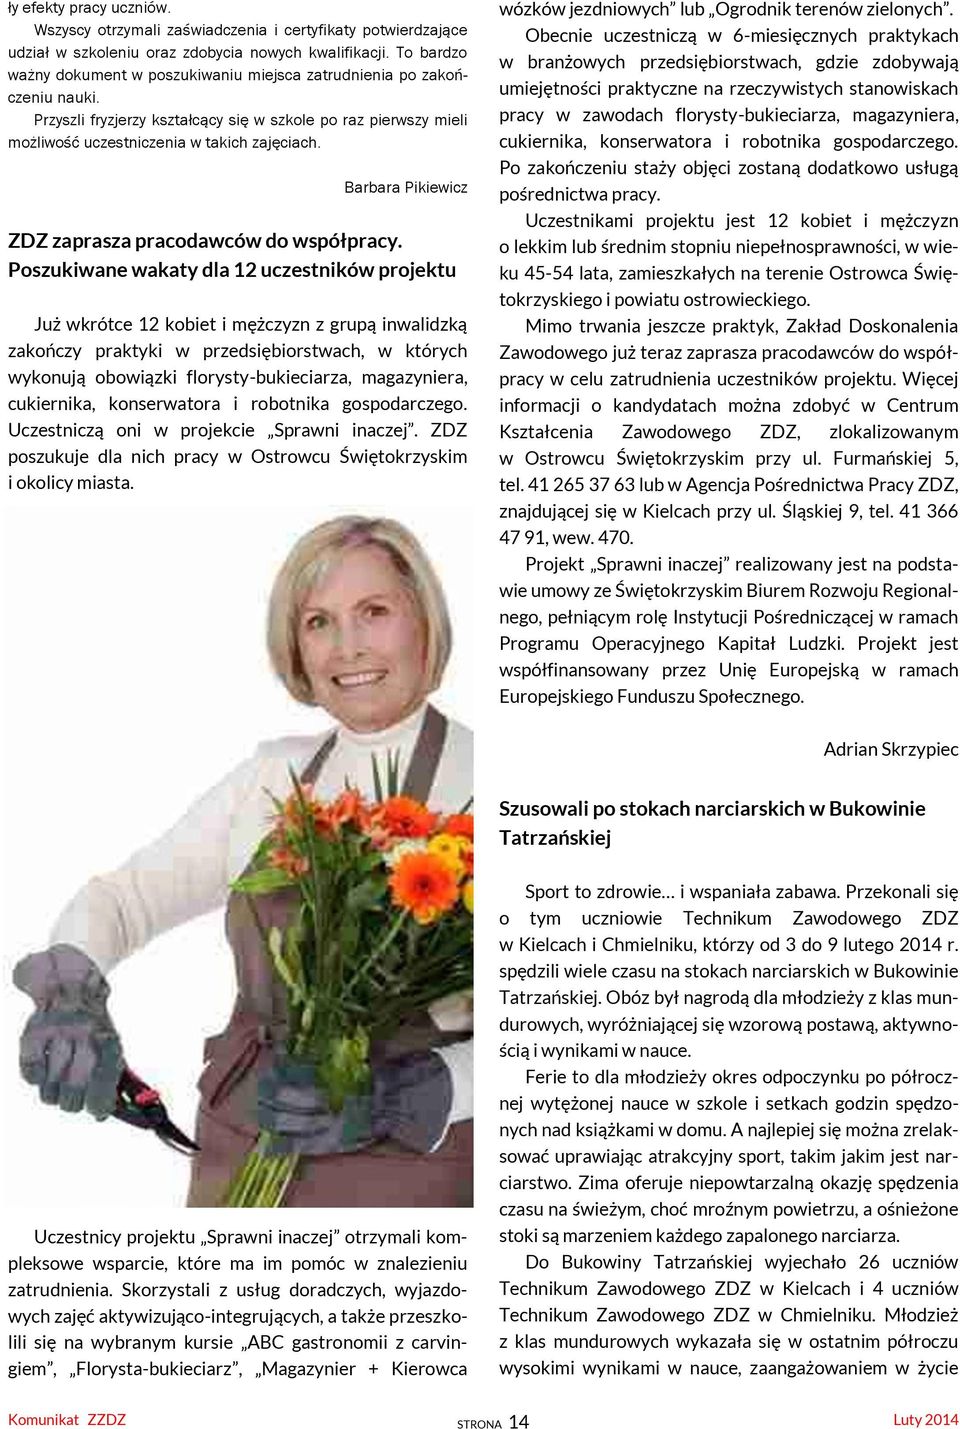 Barbara Pikiewicz ZDZ zaprasza pracodawców do współpracy.